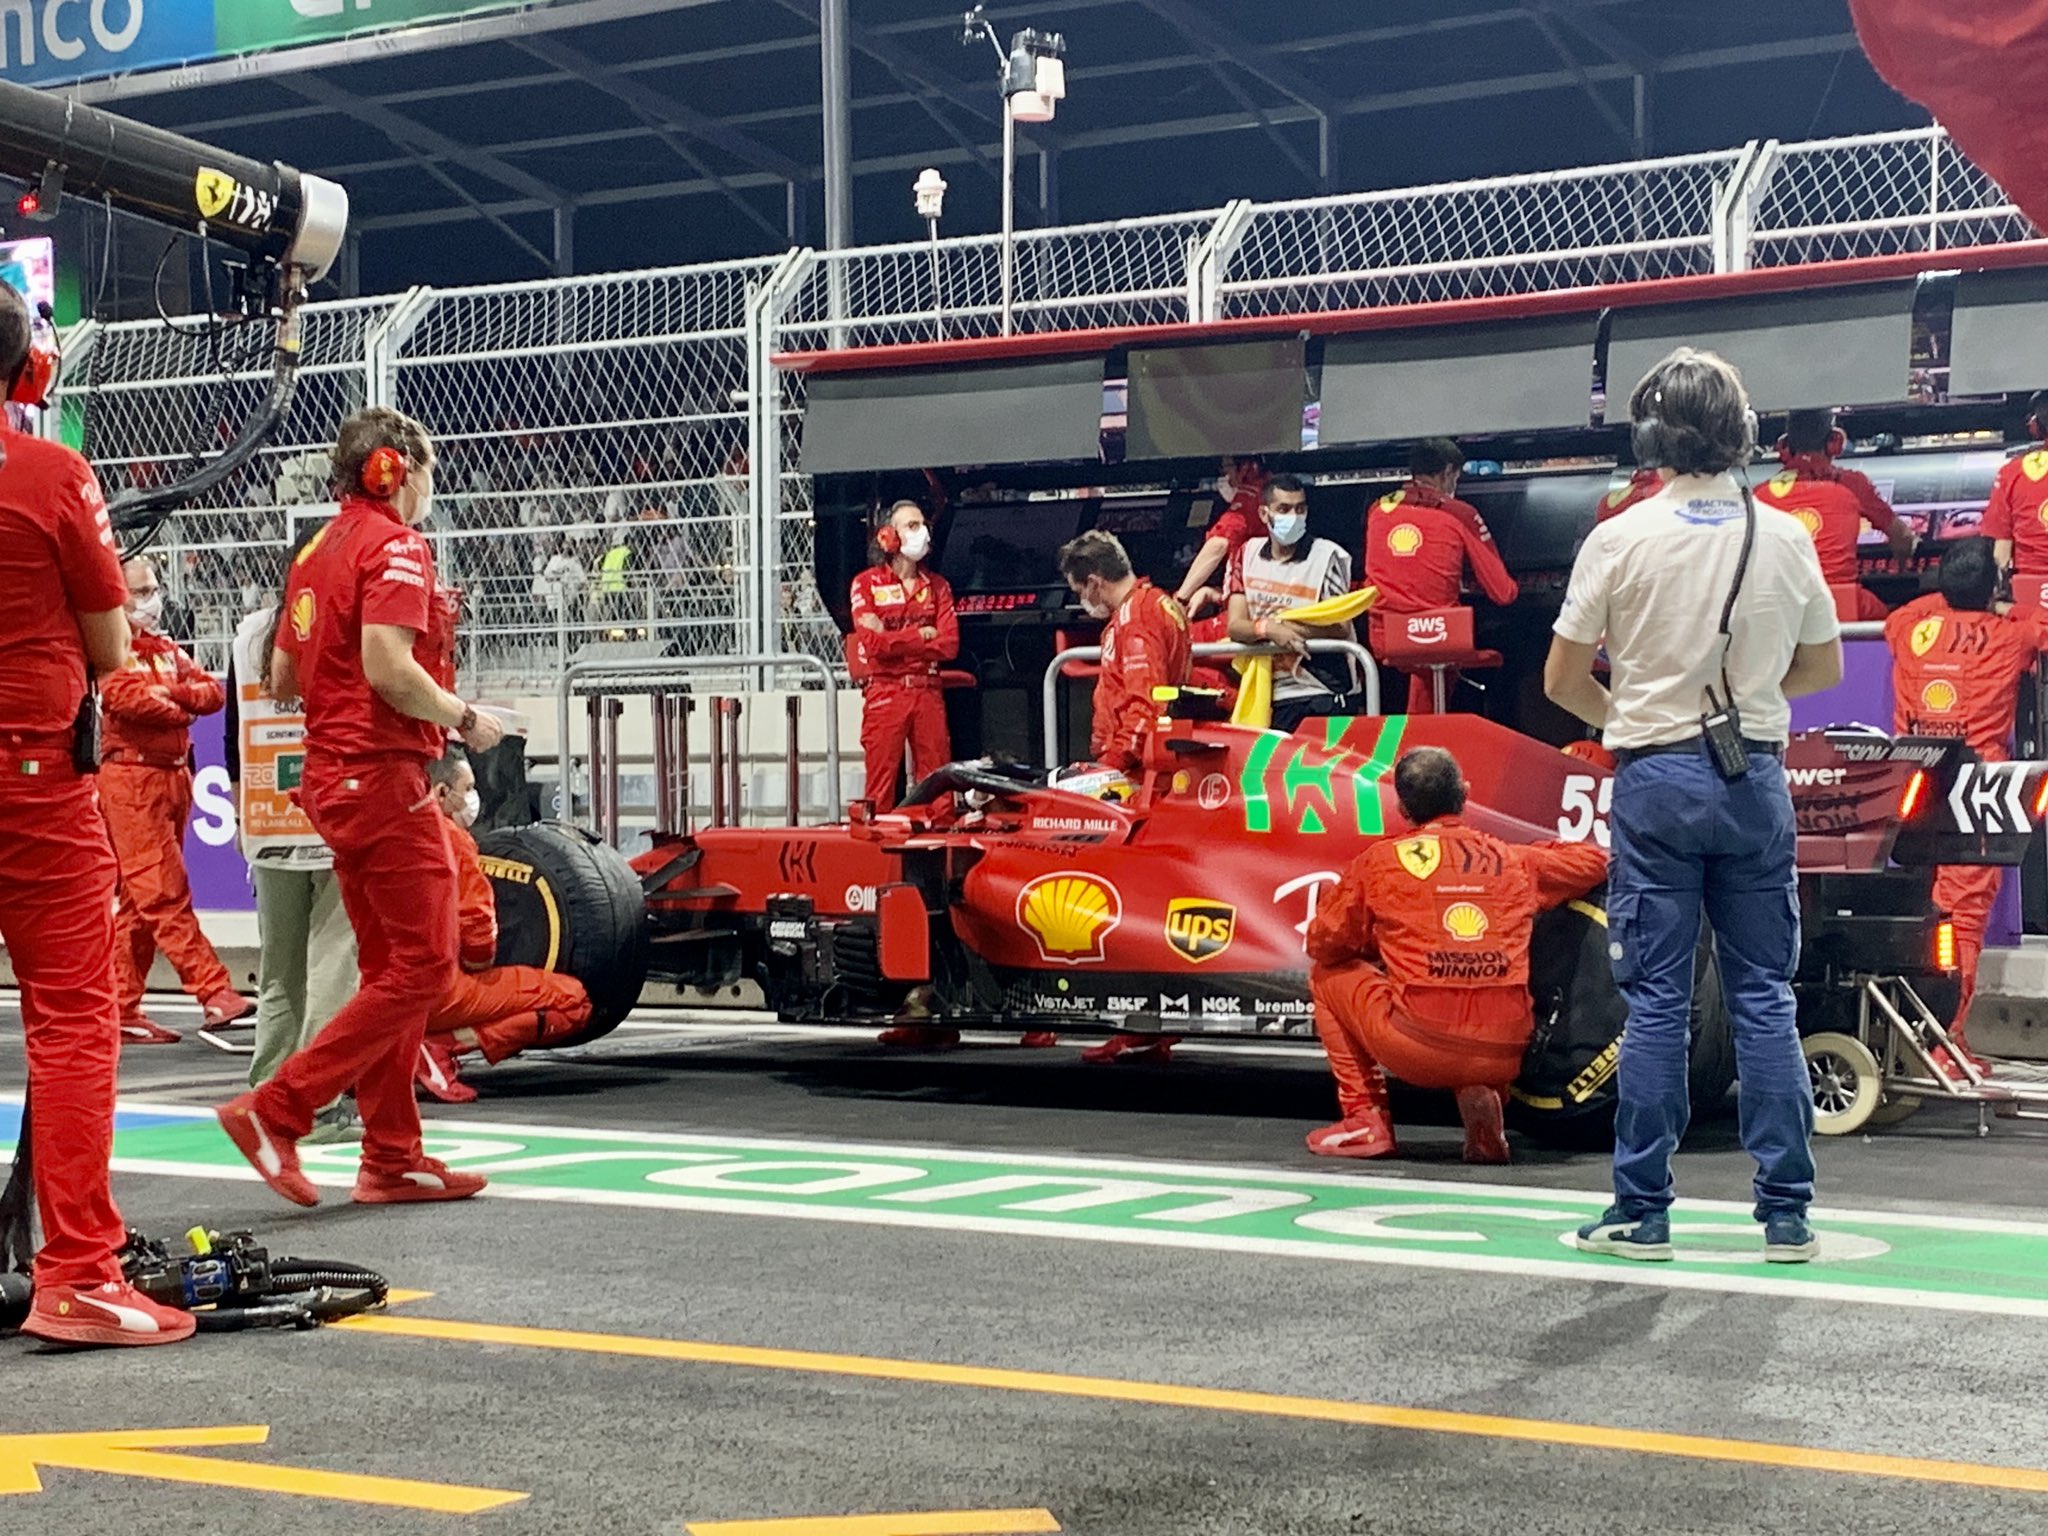 Scuderia Ferrari on X